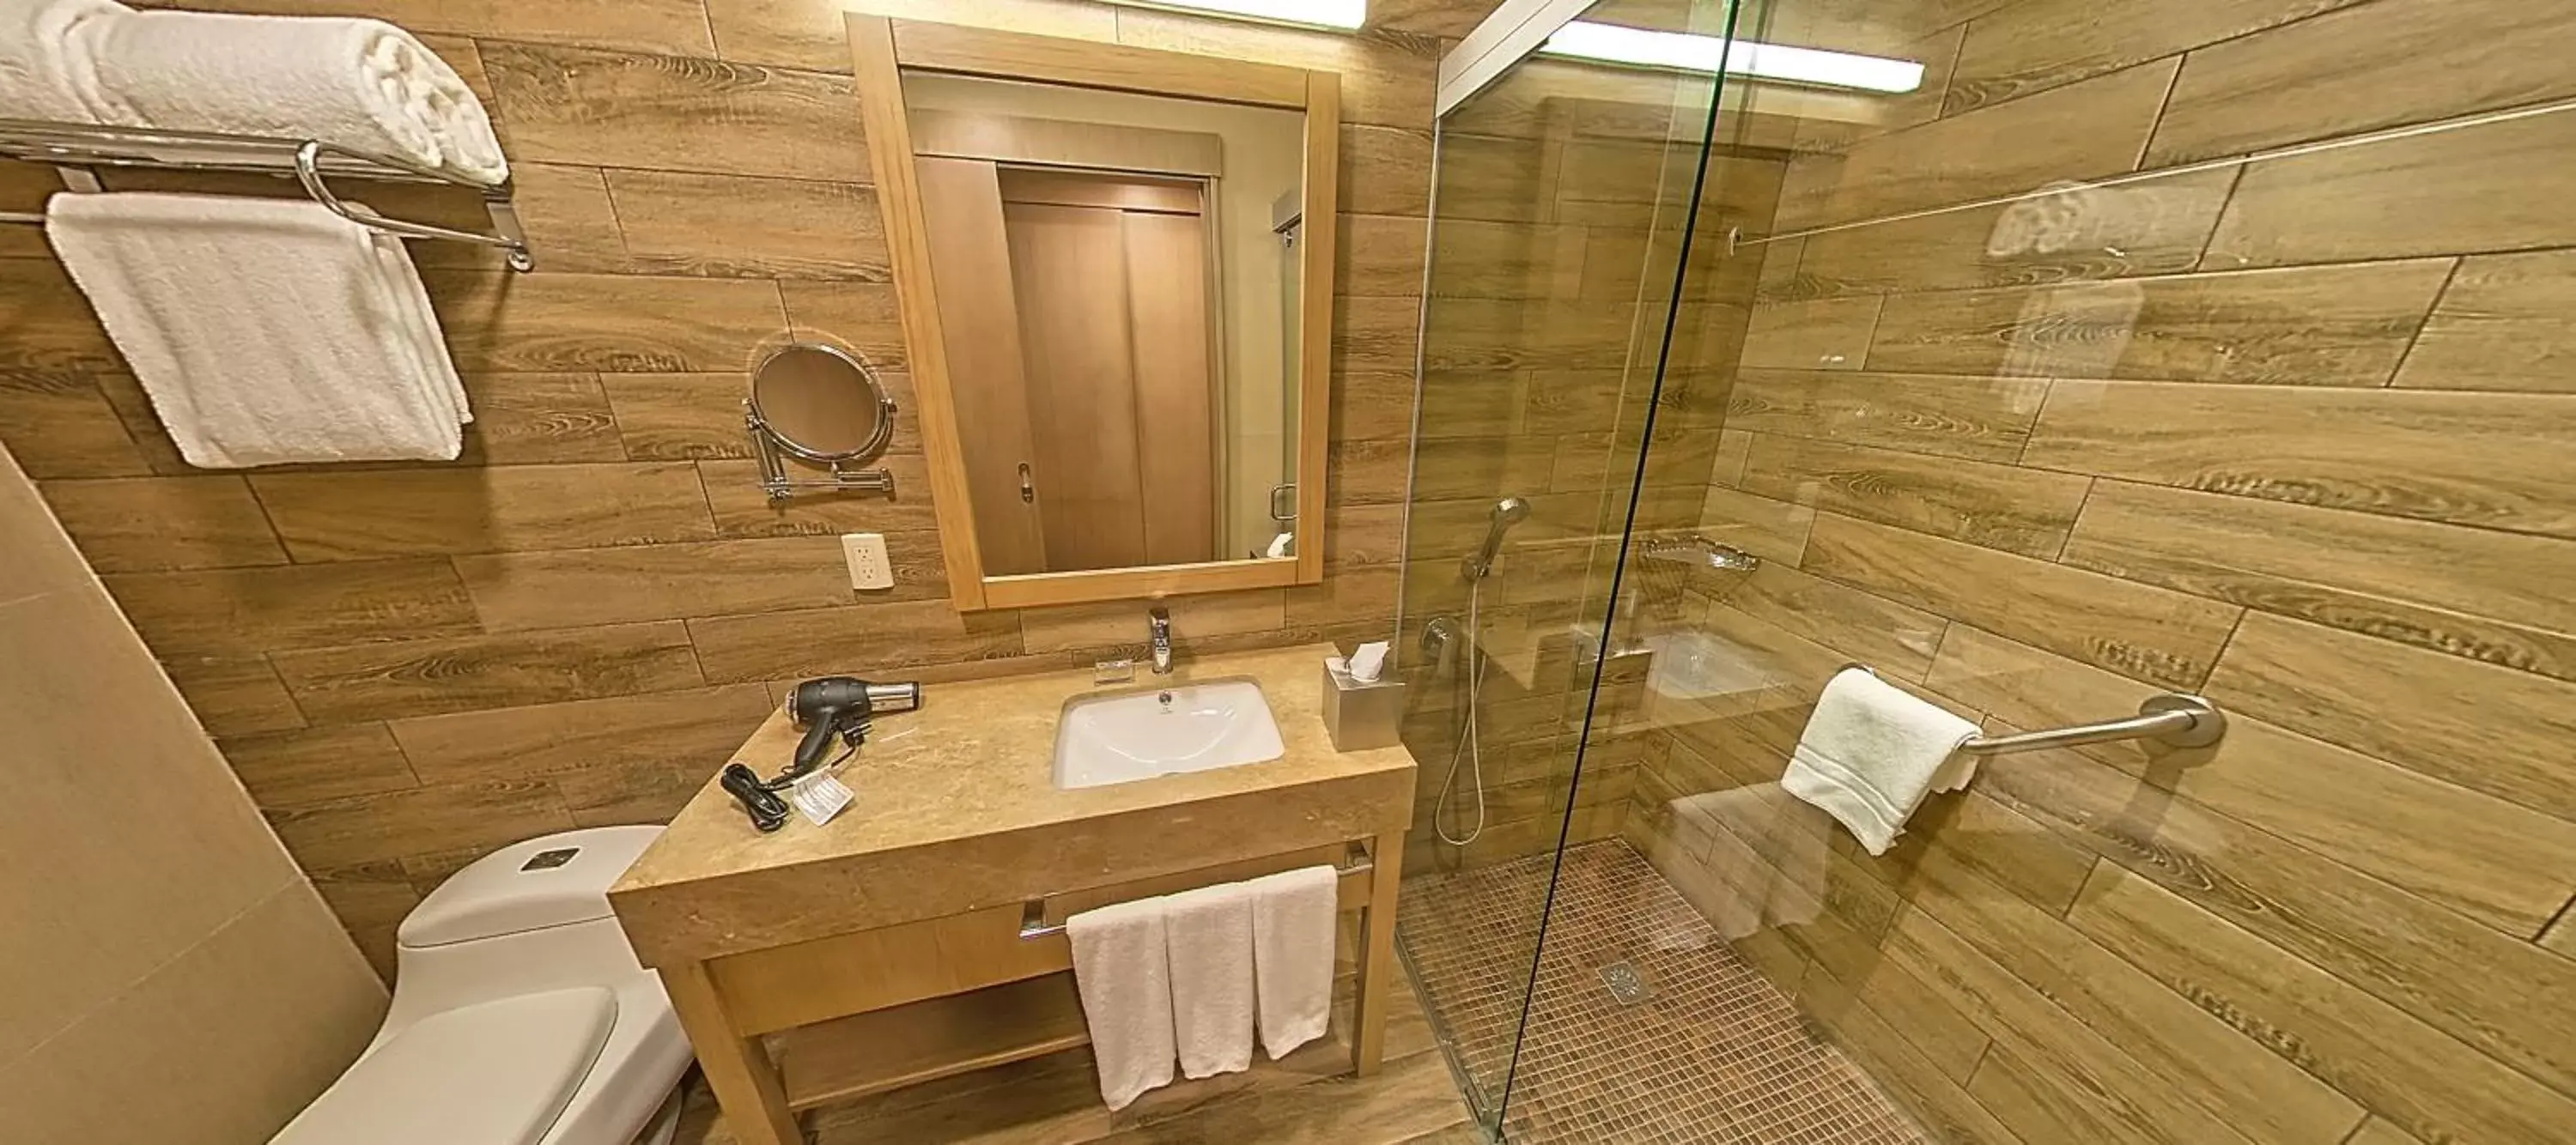 Bathroom in Radisson Hotel Guayaquil